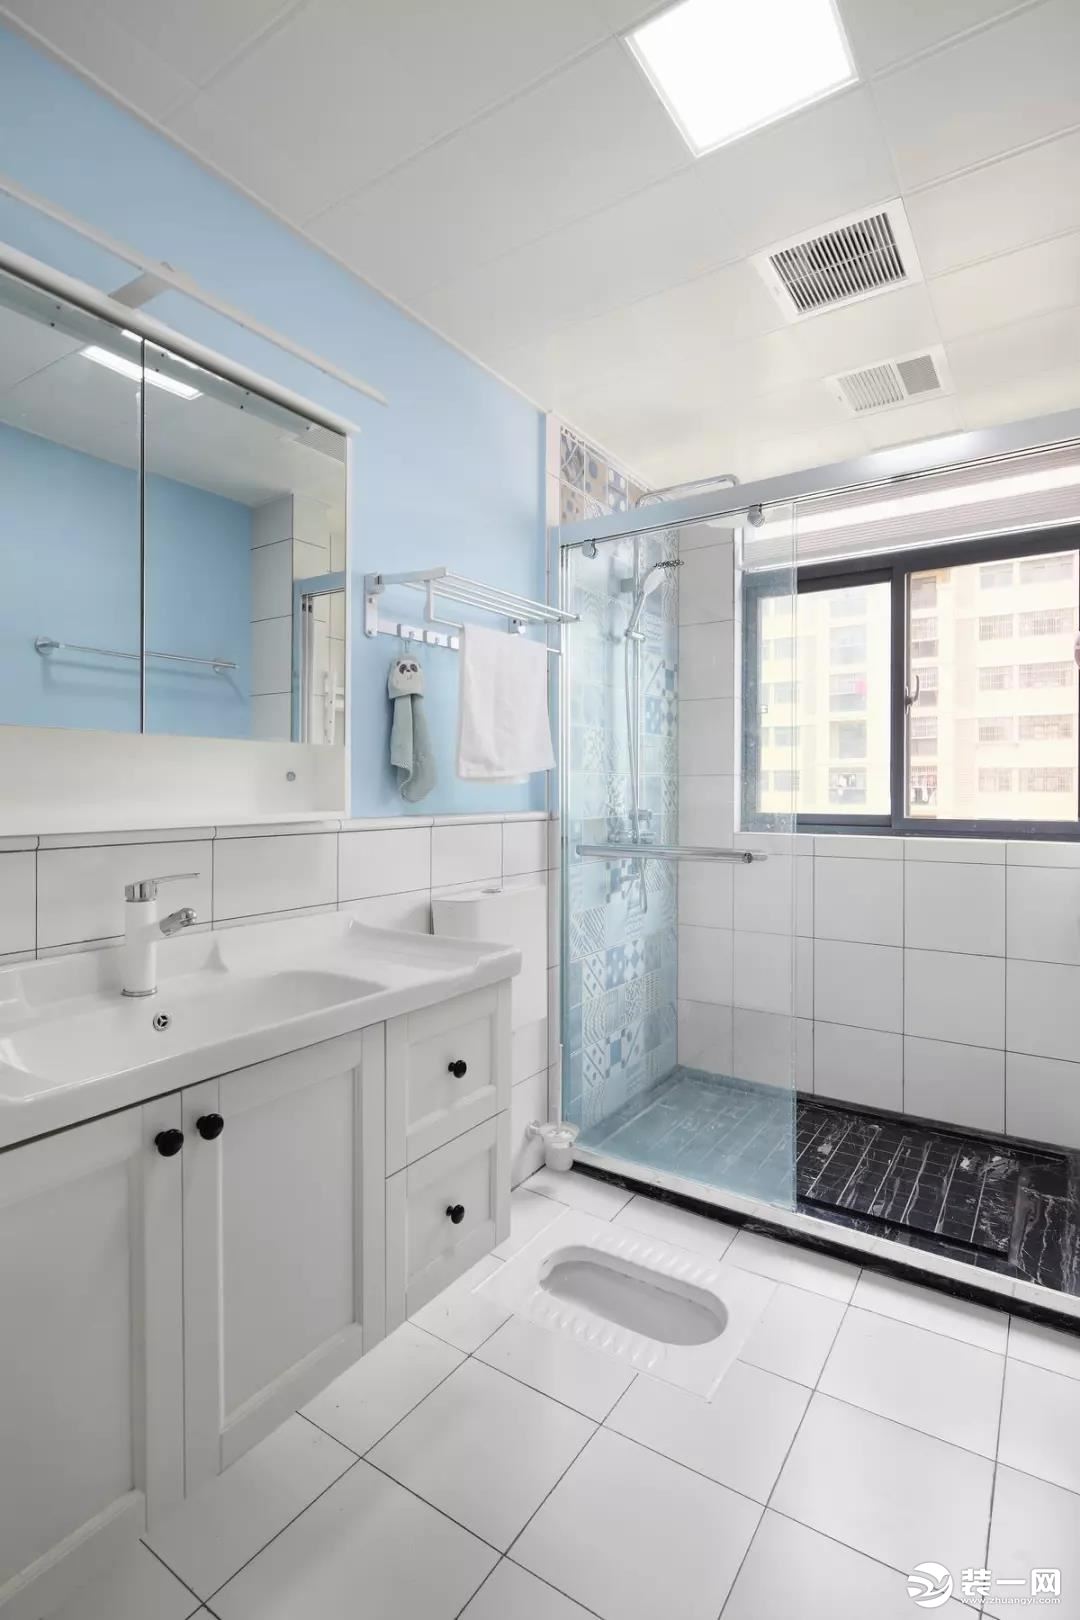 卫生间洗漱区的白色地砖延续到了腰线高处，配合天蓝色的墙面，营造格外清新的氛围。而淋浴间则以墙面花砖和